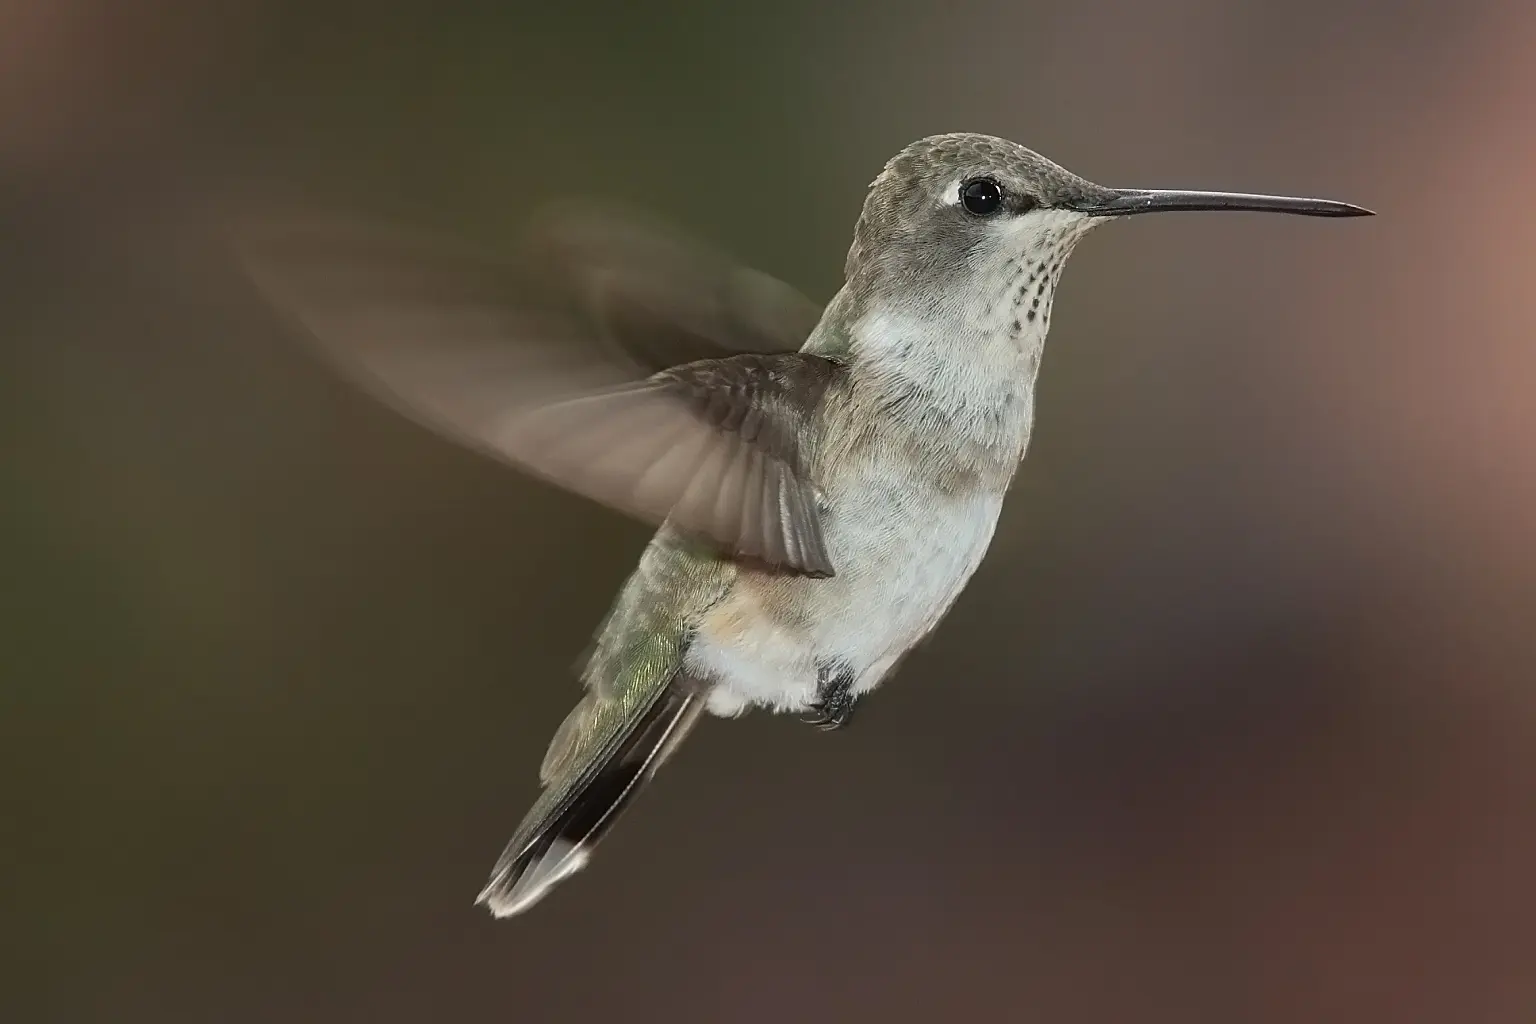 porque el picaflor se alimenta del néctar de las flores - Qué tipo de relación es cuando un colibrí se alimenta del néctar de las flores mientras las poliniza